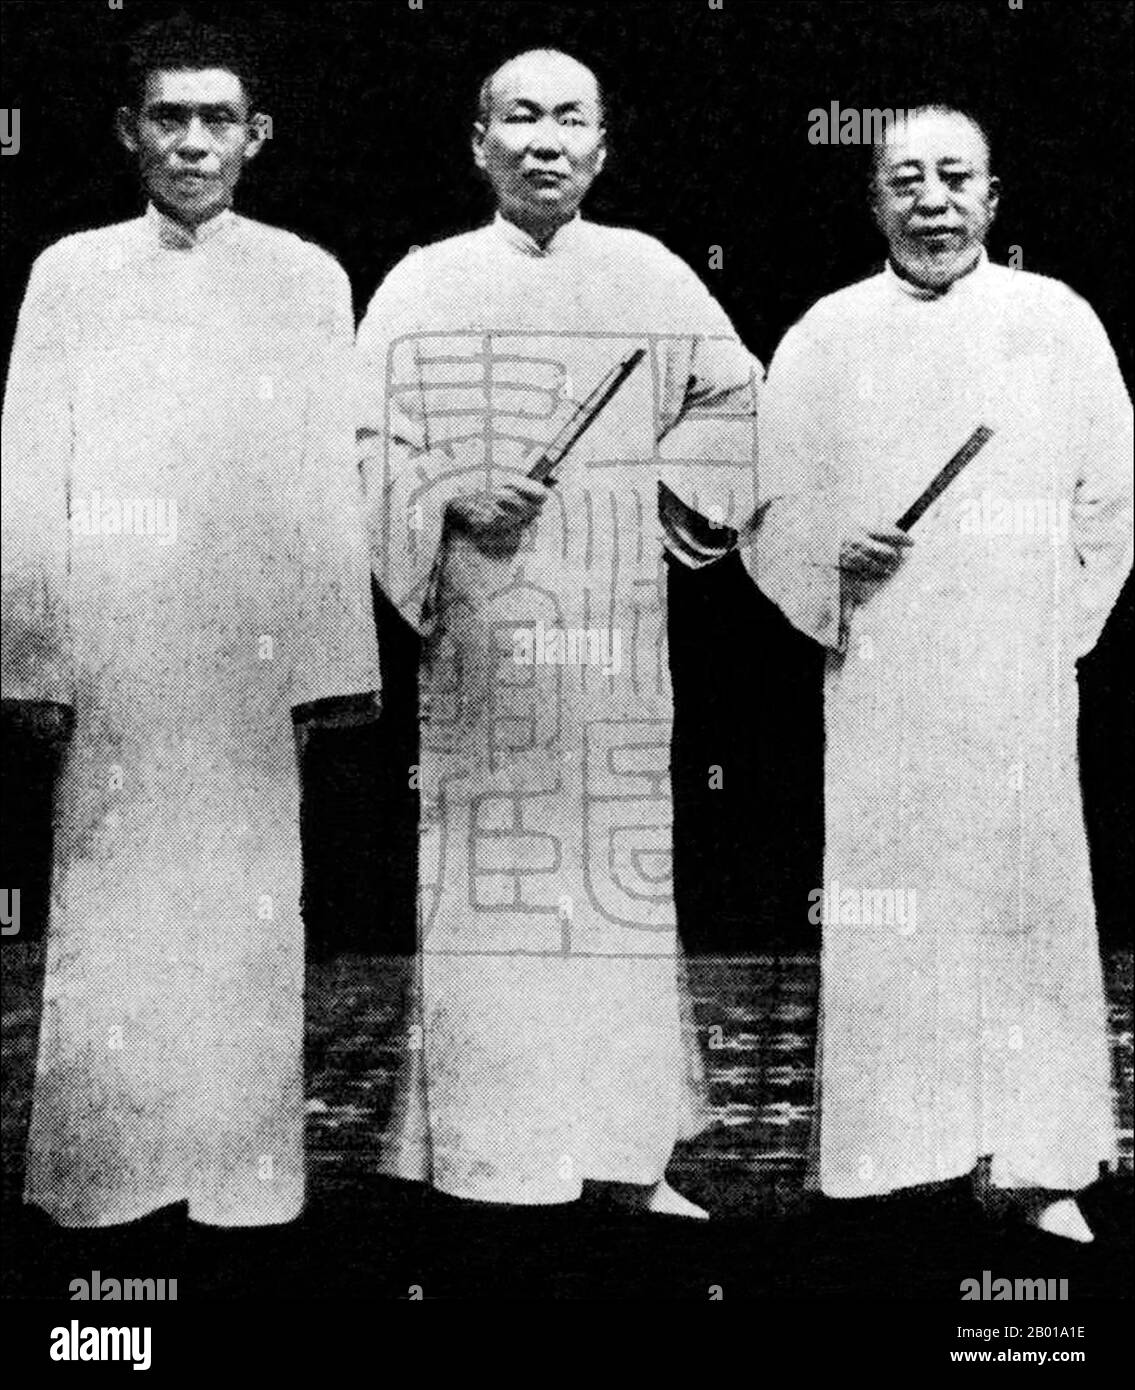 China: Drei Paten aus Shanghai (von links nach rechts) Du Yuesheng, Zhang Xiaolin und Huang Jingrong, c. 1924. Shanghai in den Jahren 1920s und 1930s wurde von mächtigen kriminellen Banden erschüttert, die von rücksichtslosen Paten geführt wurden, von denen die mächtigsten Du Yuesheng, bekannt als Zongshi oder 'der Boss' der Grünen Gang und der Shanghaier Unterwelt, waren; Zhang Xiaolin, ebenfalls ein mächtiger Anführer der Grünen Gang; Und Huang Jingrong, der ranghöchste chinesische Detektiv der französischen Konzessionspolizei (FCP) und einer der wichtigsten Gangster Shanghais. Zu ihren Imperien gehörten Drogen, Schutzschläger, Schmuggel und Prostitution. Stockfoto